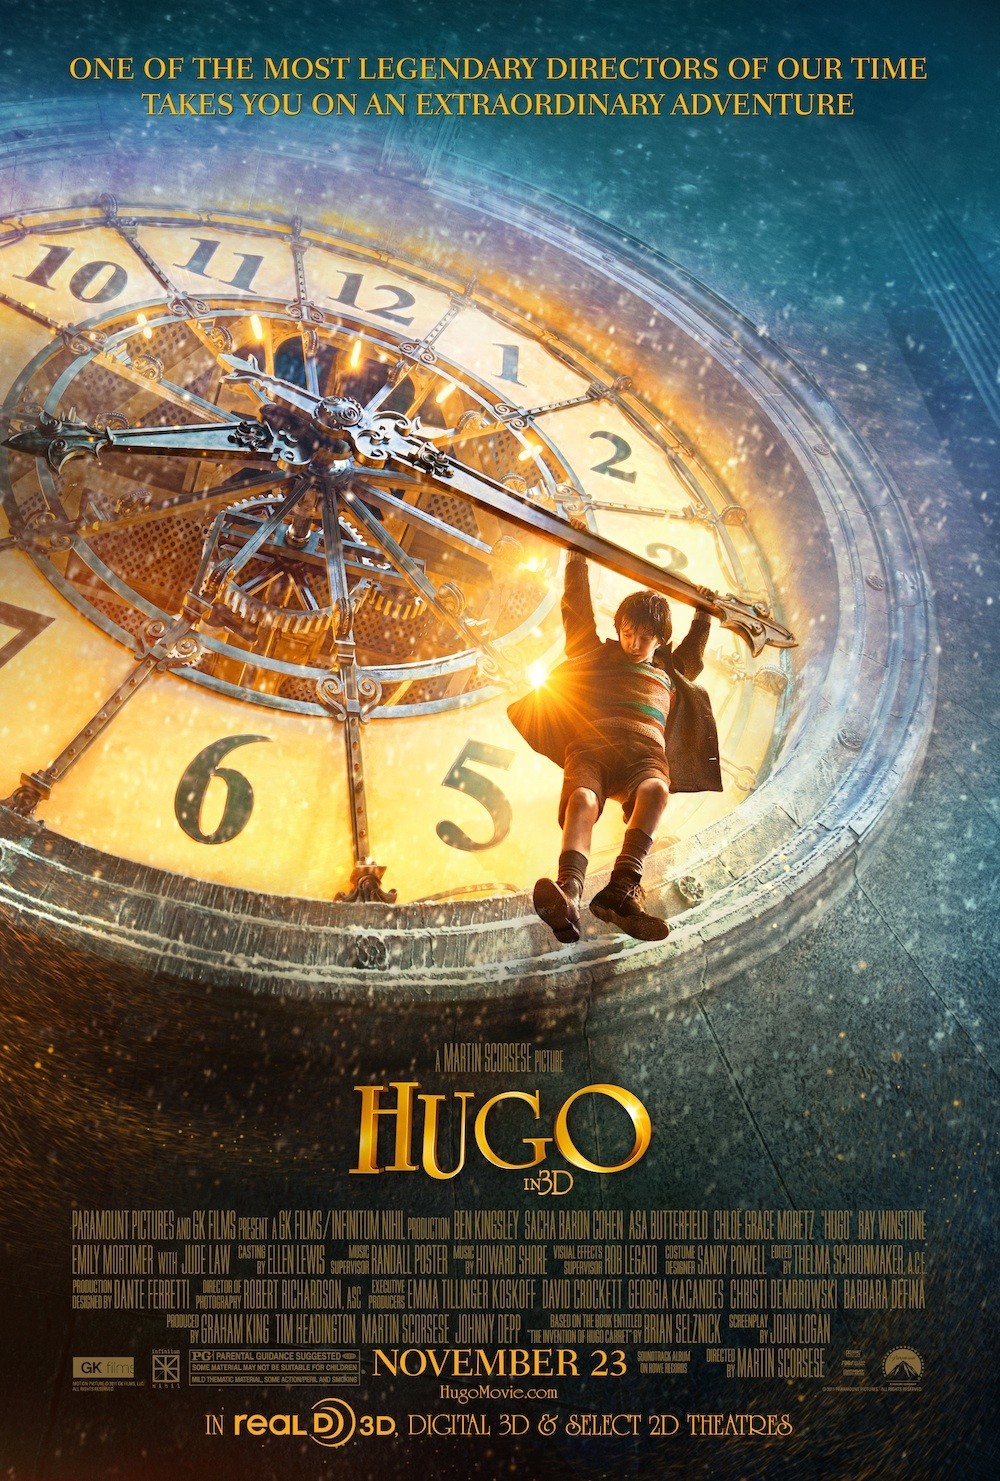 ดูหนังออนไลน์ฟรี Hugo 2011 ปริศนามนุษย์กลของฮิวโก้ movie678